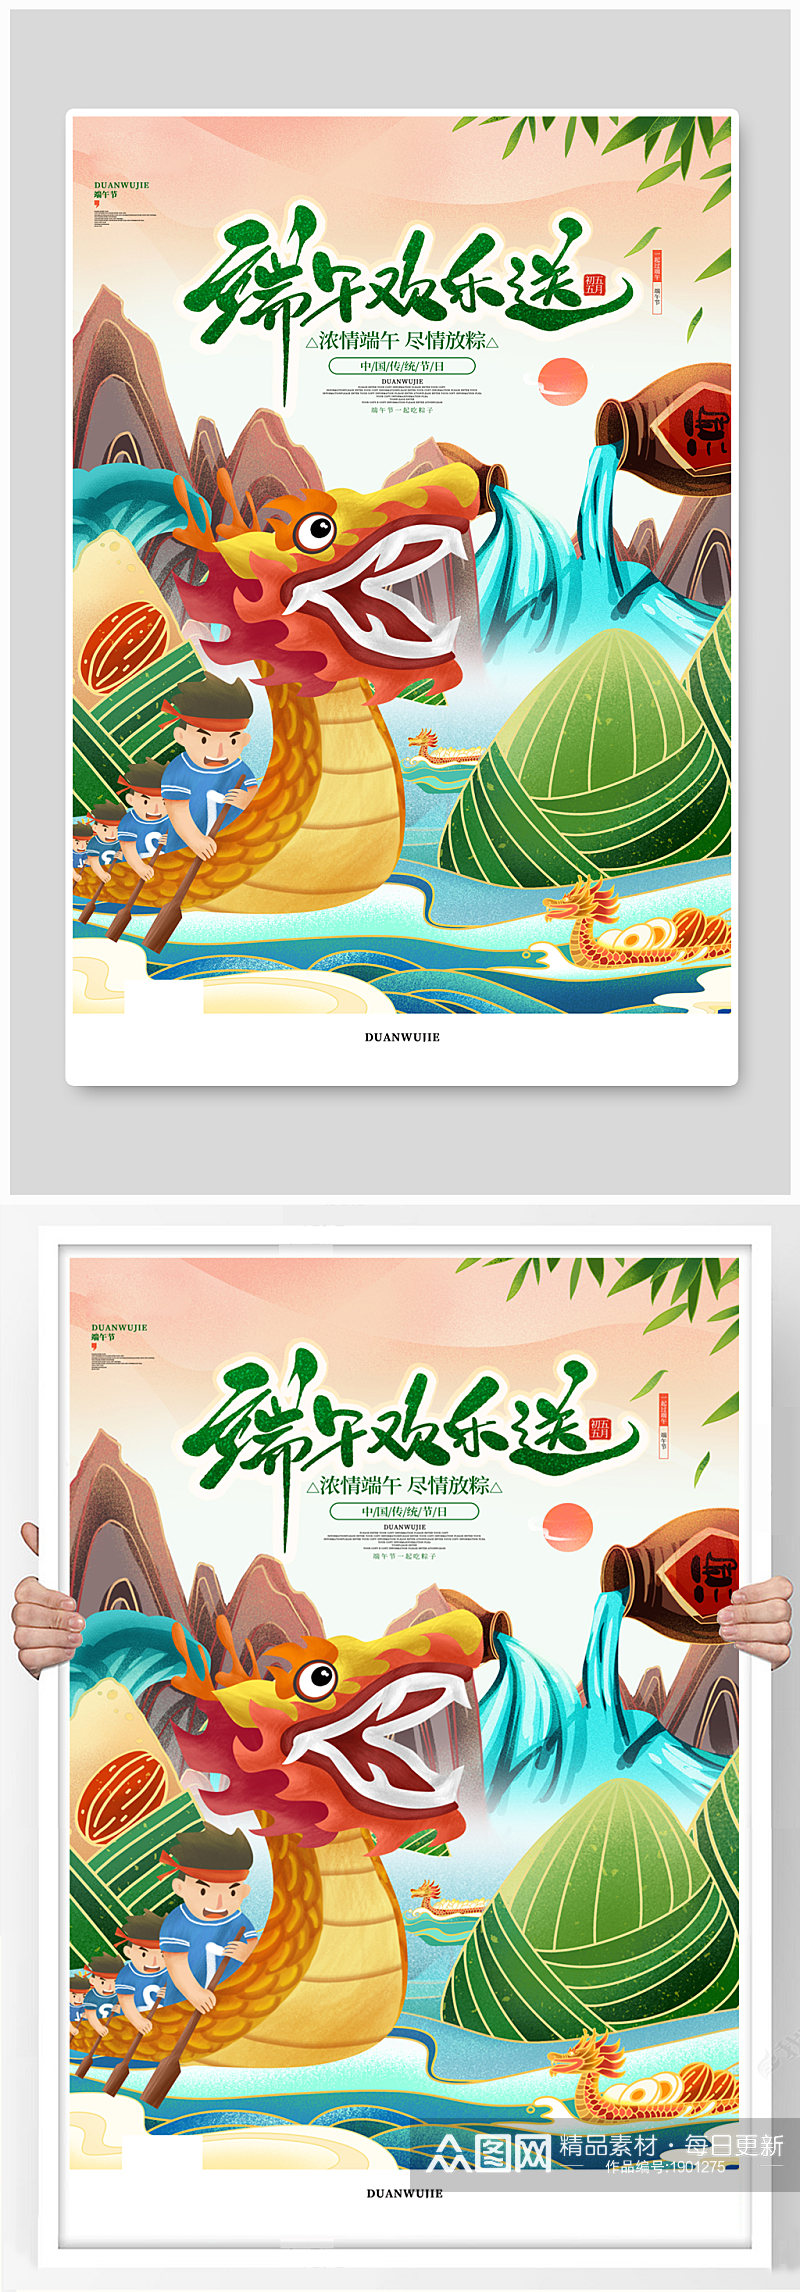 中国风唯美卡通赛龙舟端午节宣传节日海报素材